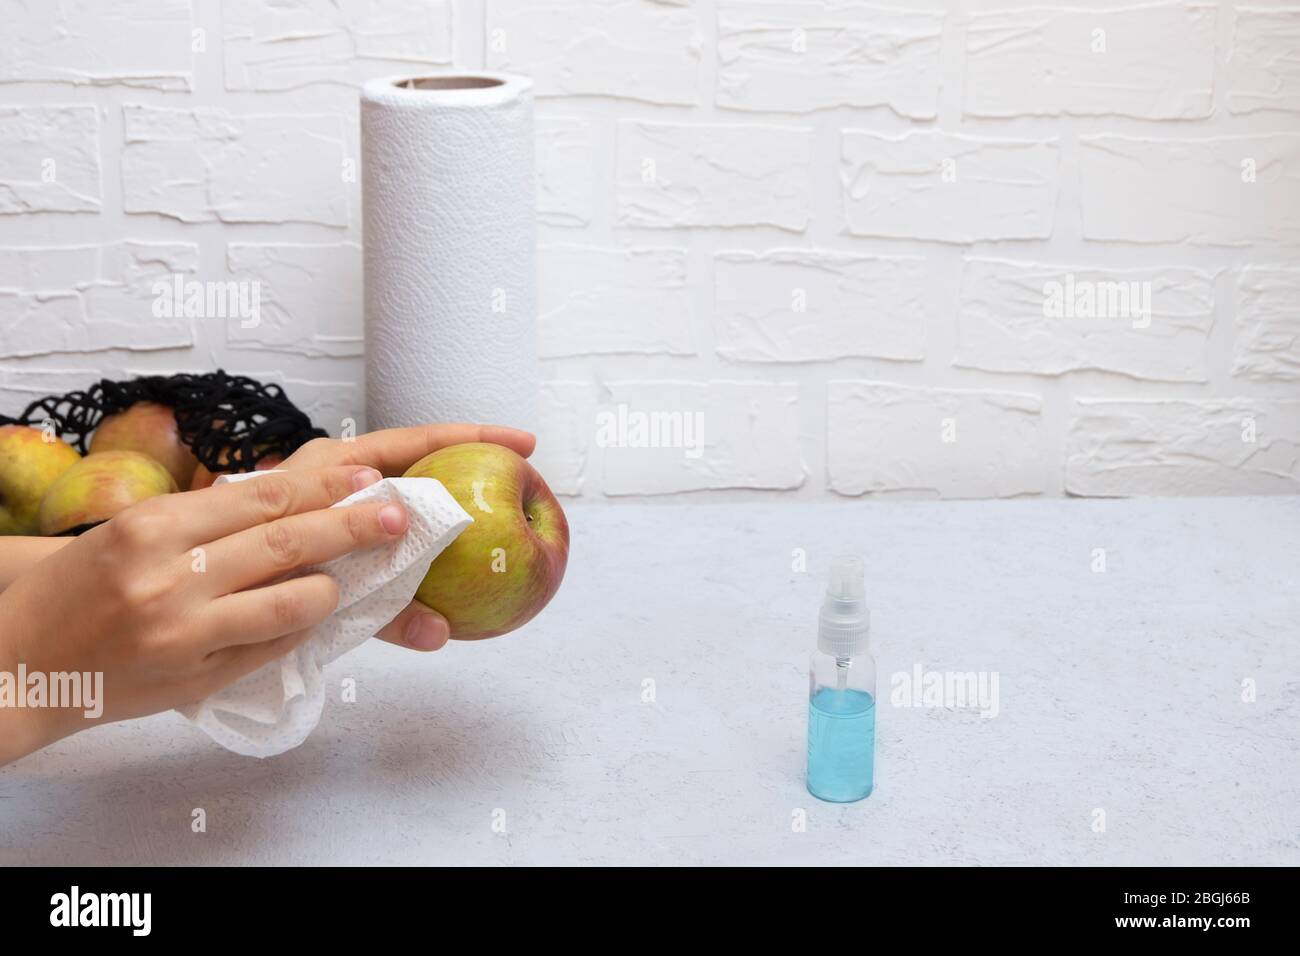 Laver les fruits et les produits pendant le Coronavirus. Femme mains nettoyer les pommes avec de l'aseptisant Banque D'Images